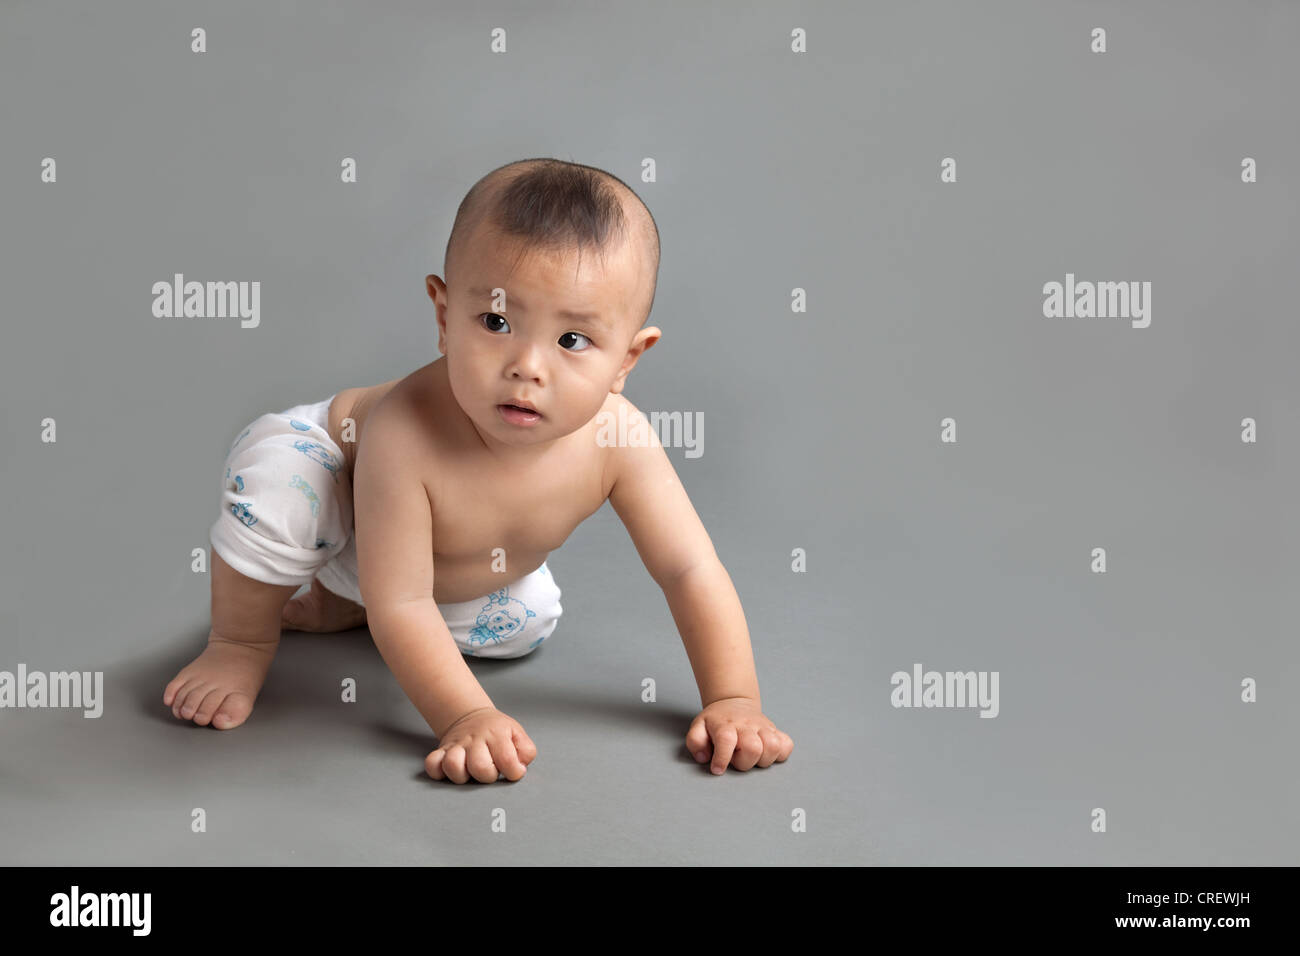 10 mois bébé garçon chinois, avec coupe de bébé chinois typique, rampant Banque D'Images